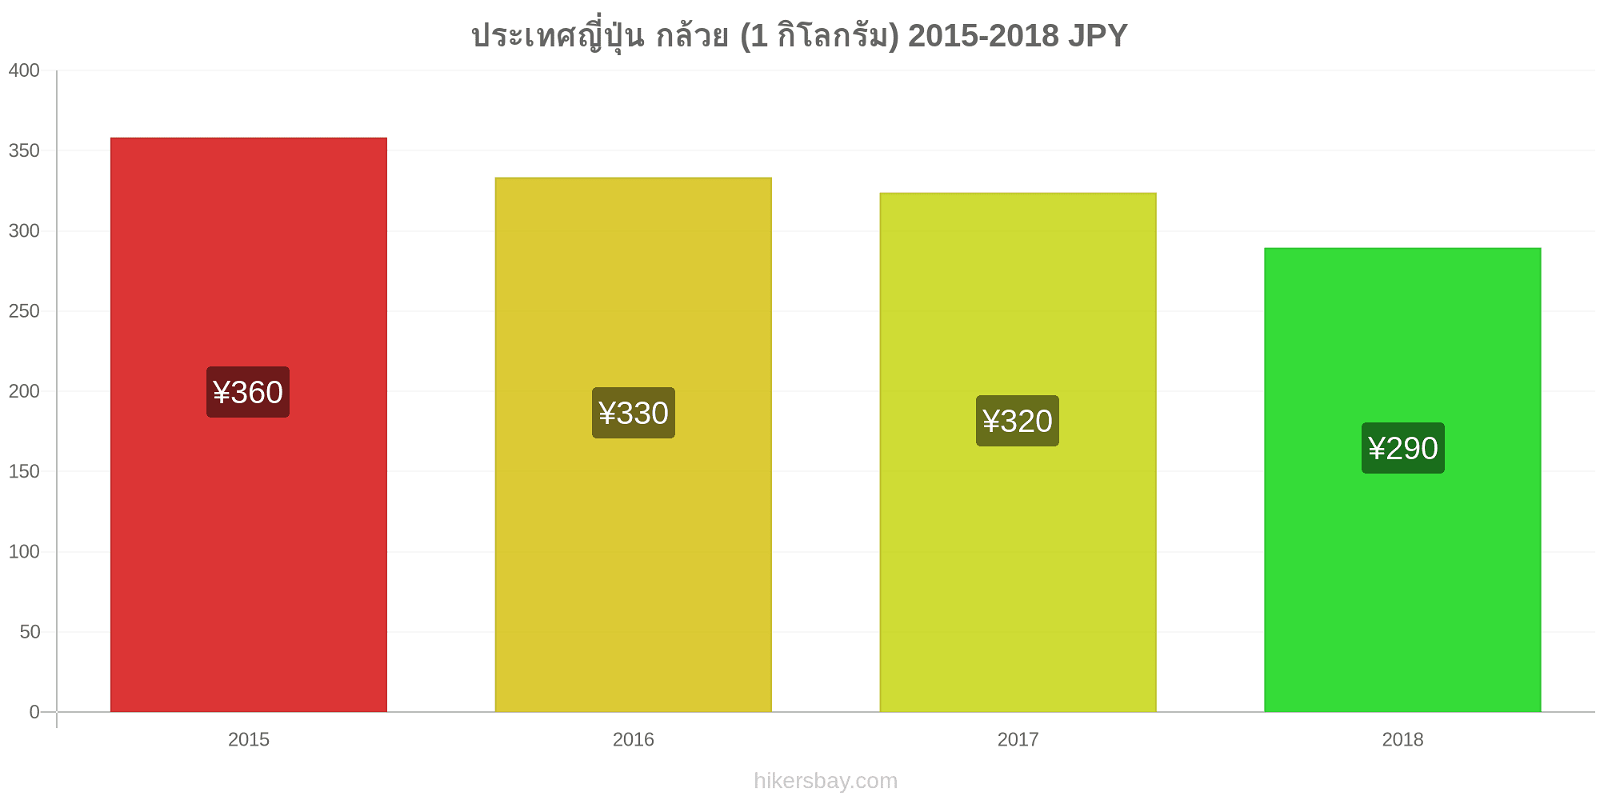 ประเทศญี่ปุ่น การเปลี่ยนแปลงราคา กล้วย (1 กิโลกรัม) hikersbay.com